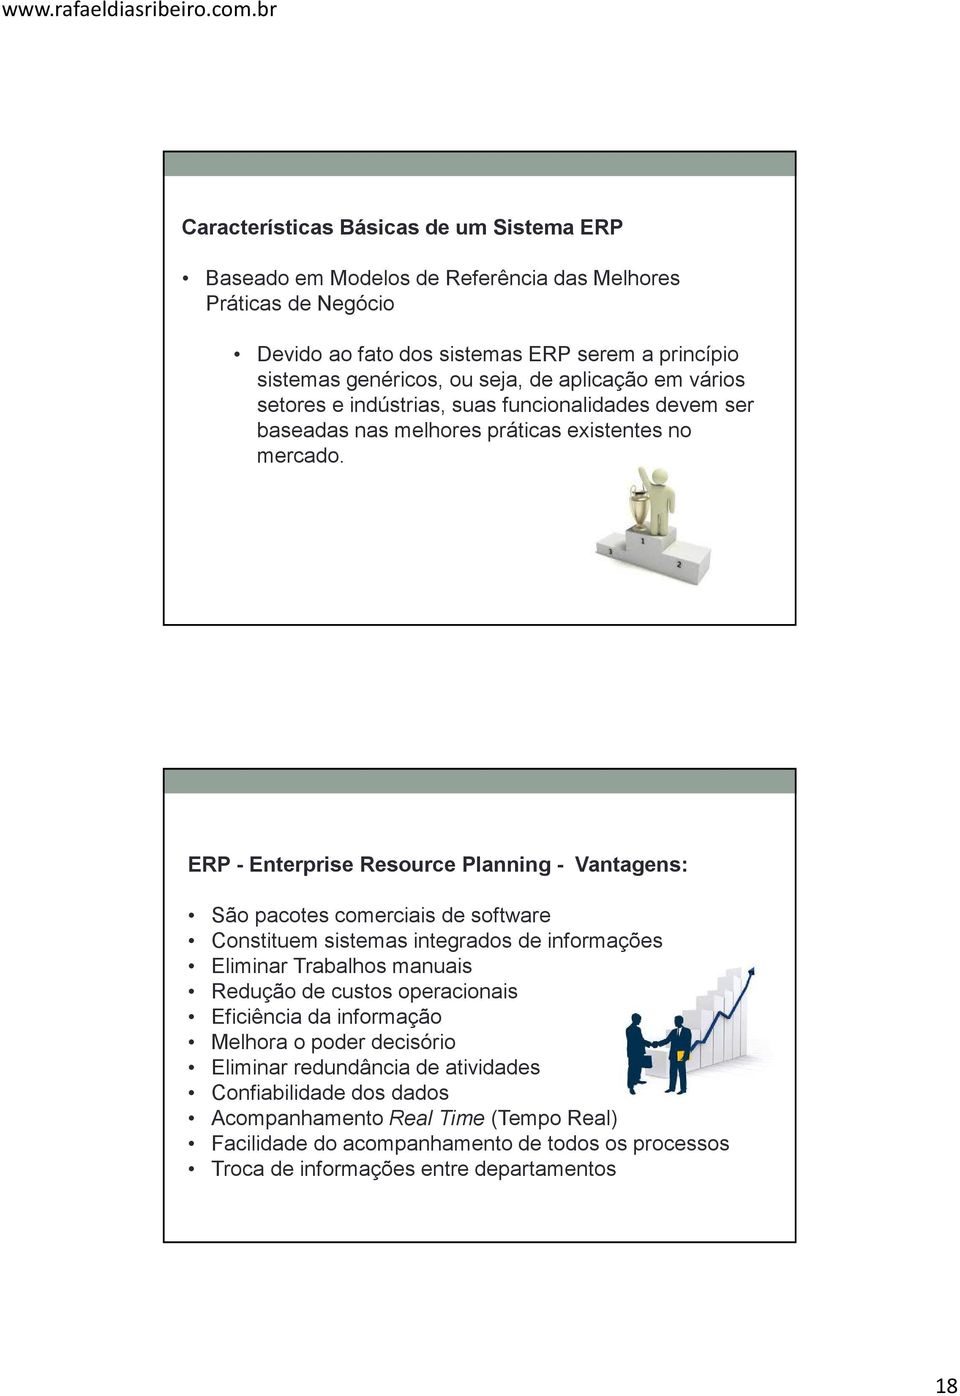 ERP - Enterprise Resource Planning - Vantagens: São pacotes comerciais de software Constituem sistemas integrados de informações Eliminar Trabalhos manuais Redução de custos operacionais